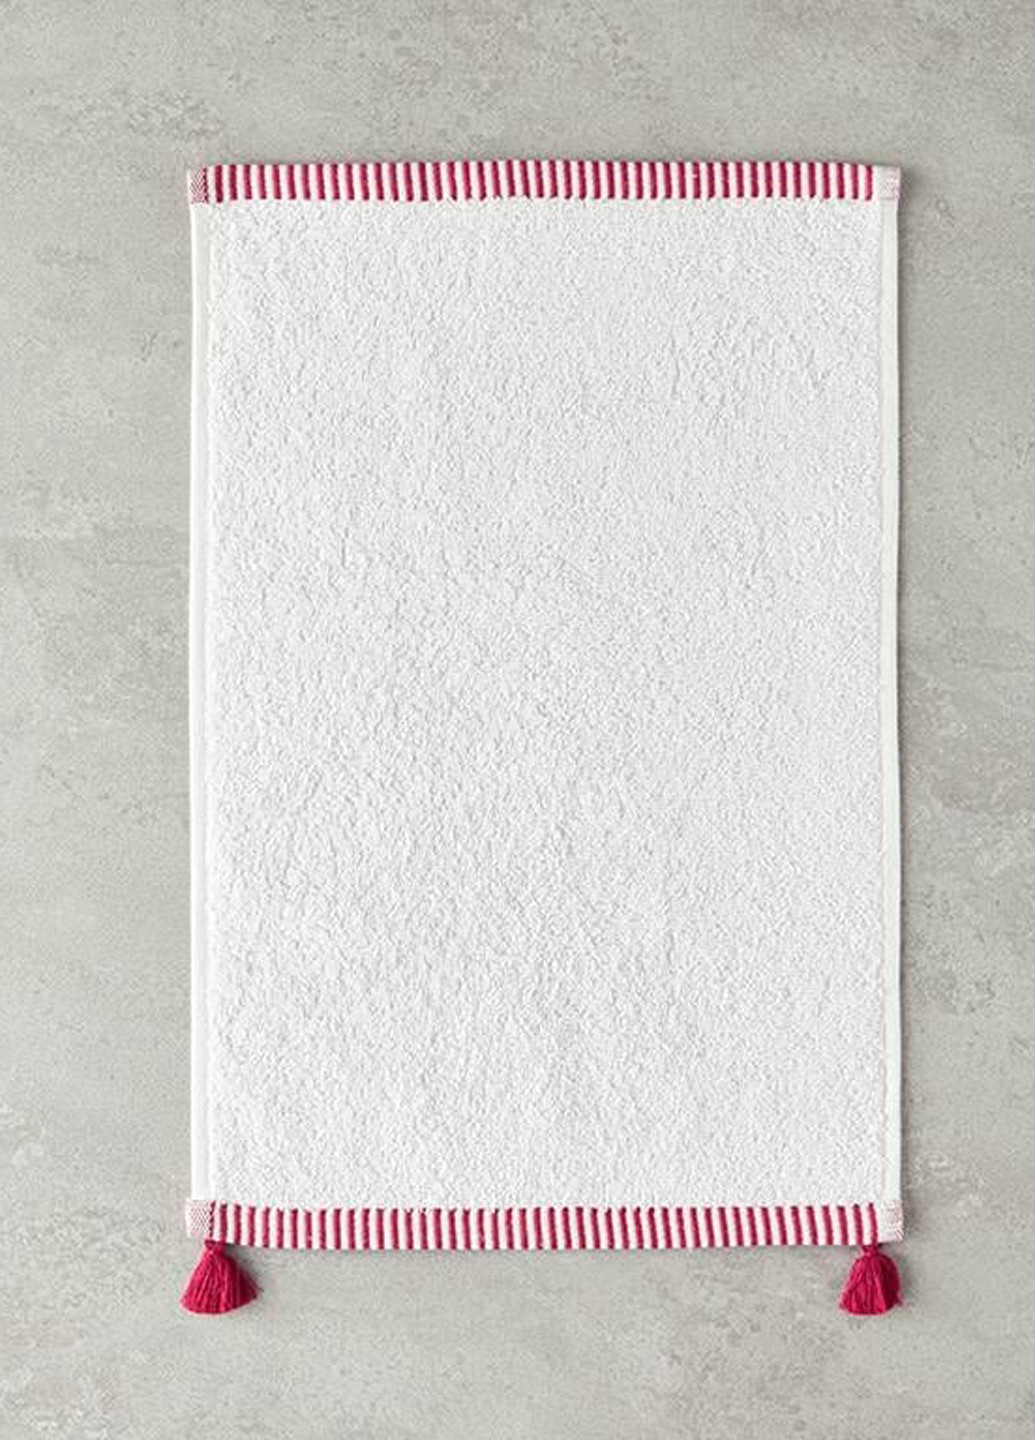 English Home полотенце для рук, 30х45 см полоска розовый производство - Турция